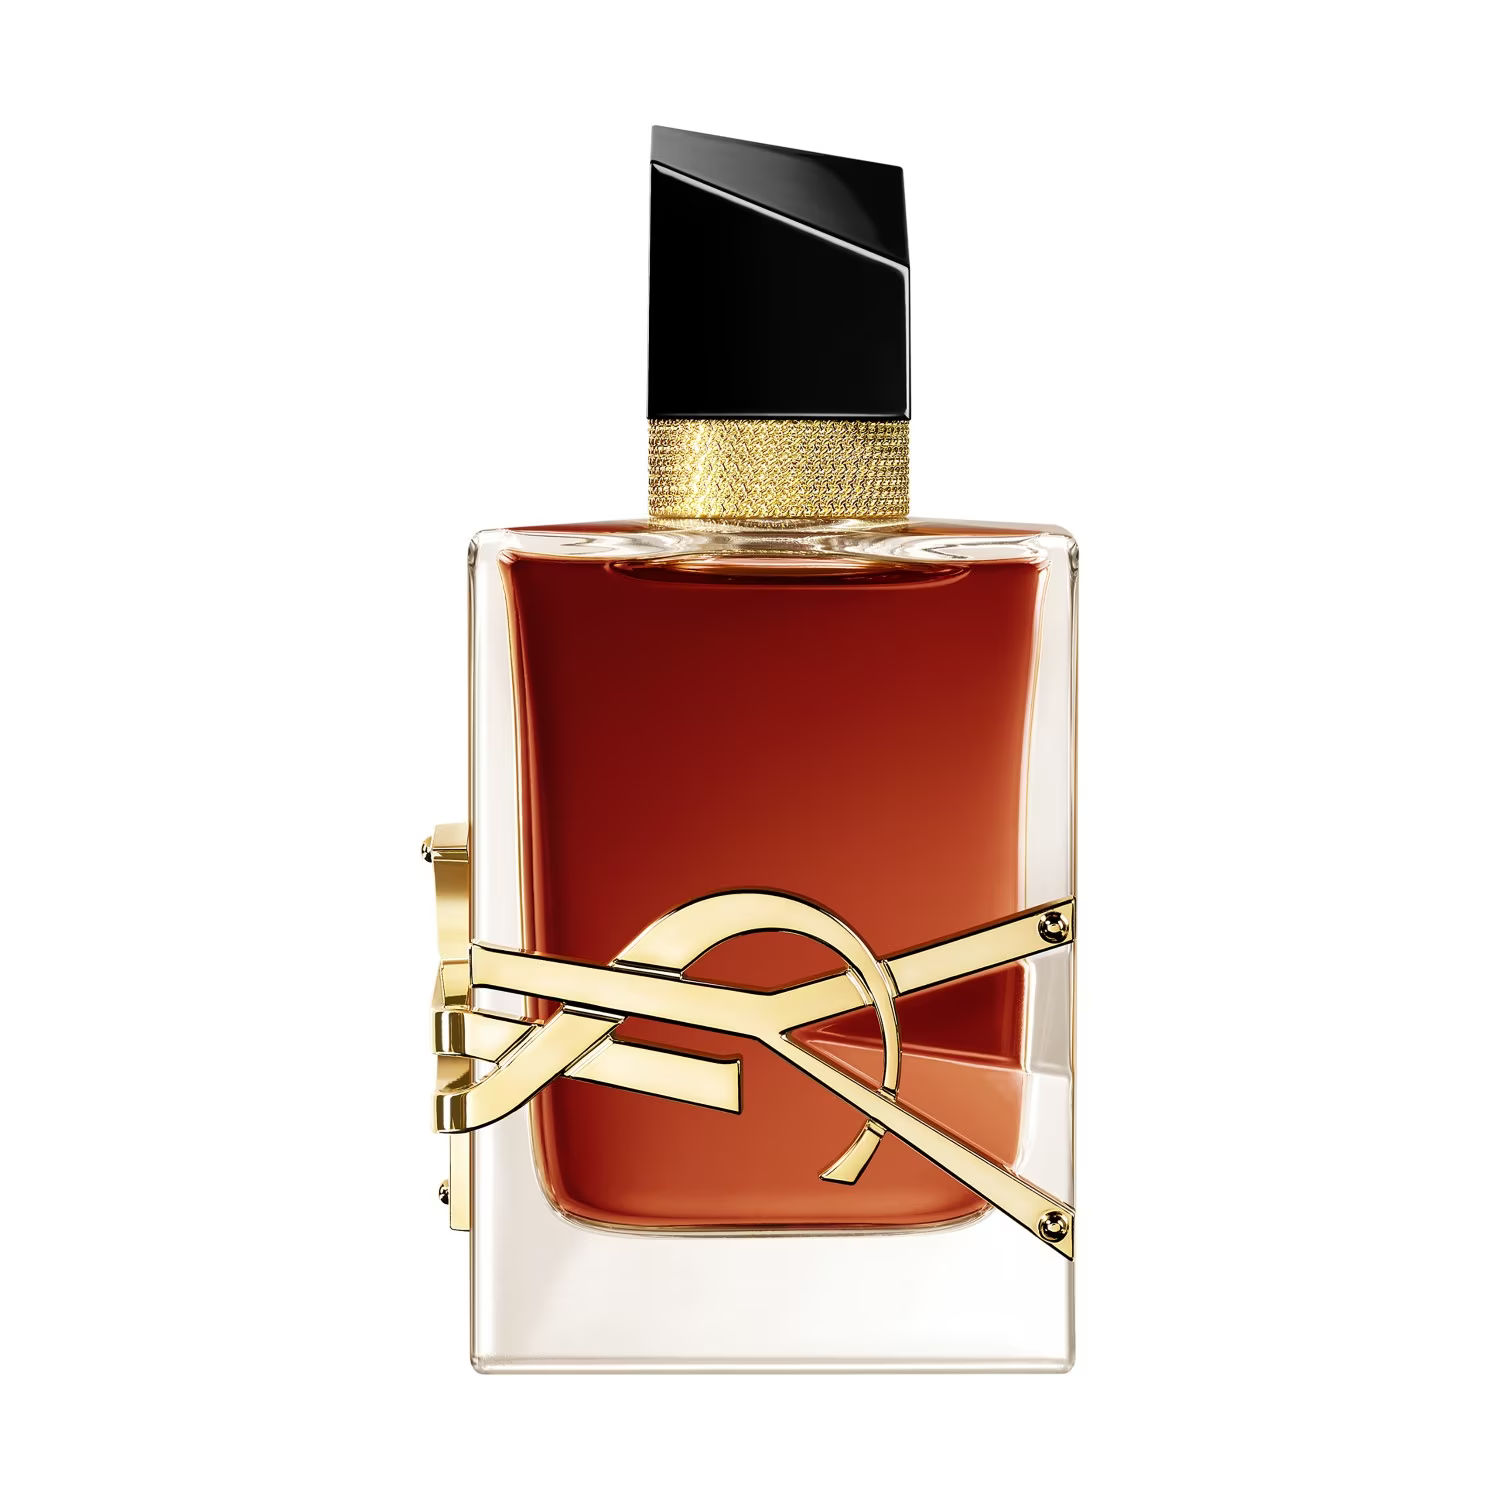 Yves Saint Laurent Libre Intense Eau de parfum Intense 90 ml